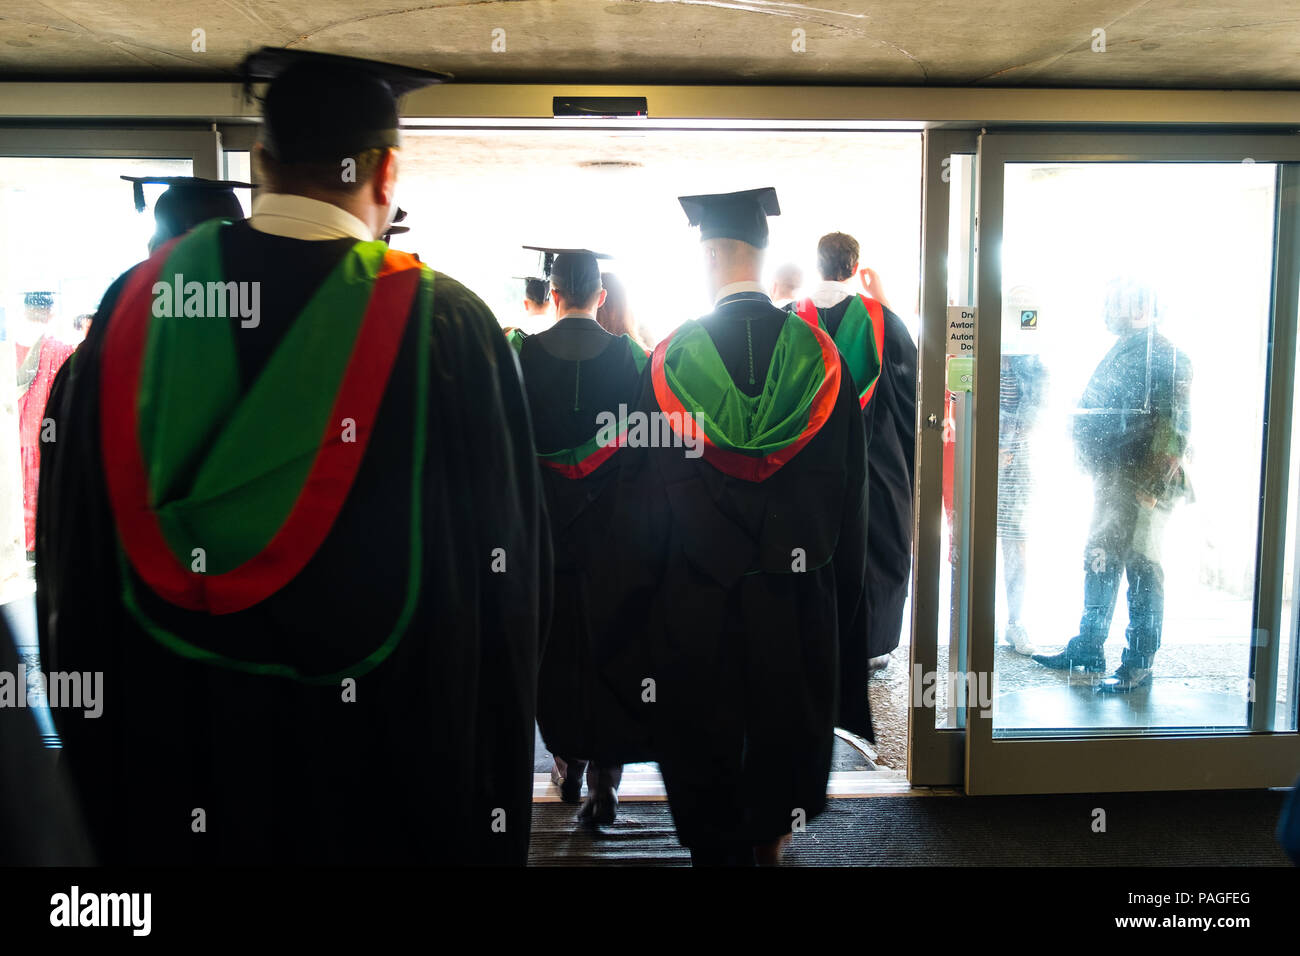 L'enseignement supérieur au Royaume-Uni : les finissants d'université d'Aberystwyth, à leurs conseils et le mortier traditionnel robes académiques noir. Juillet 2018 Banque D'Images